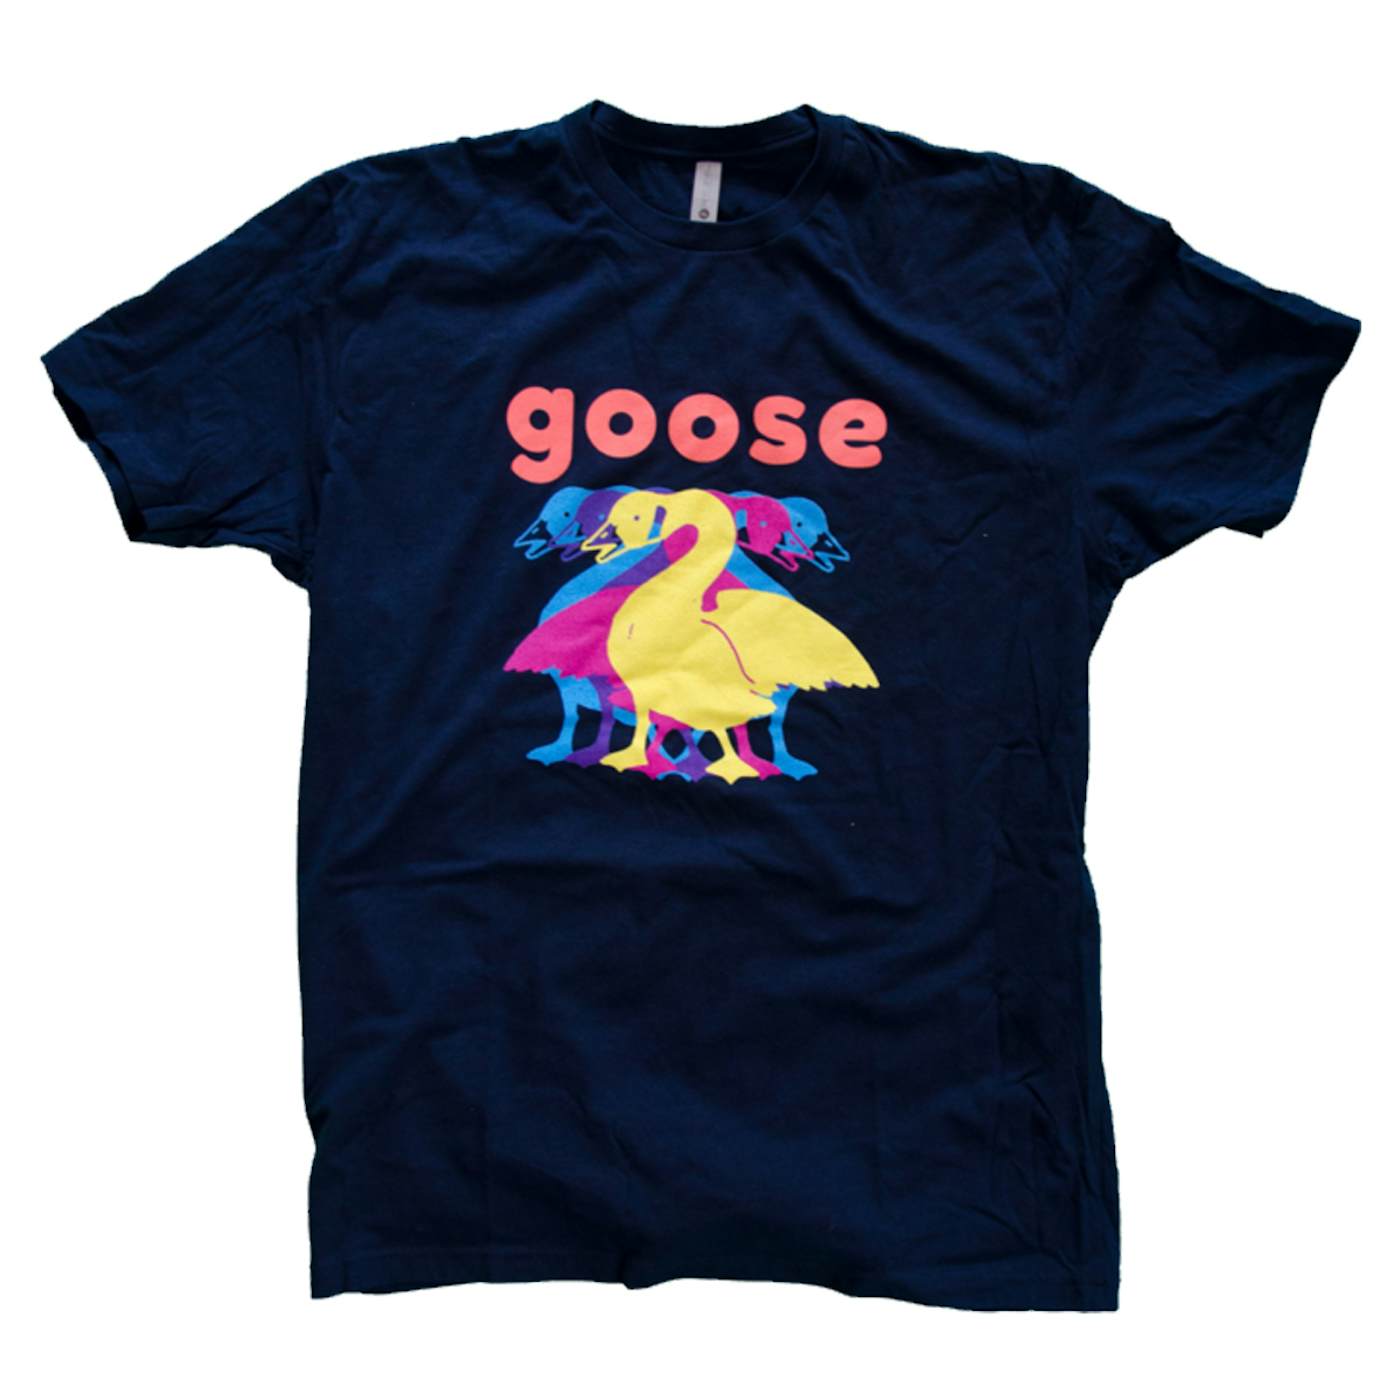 Goose "5" Navy T-shirt